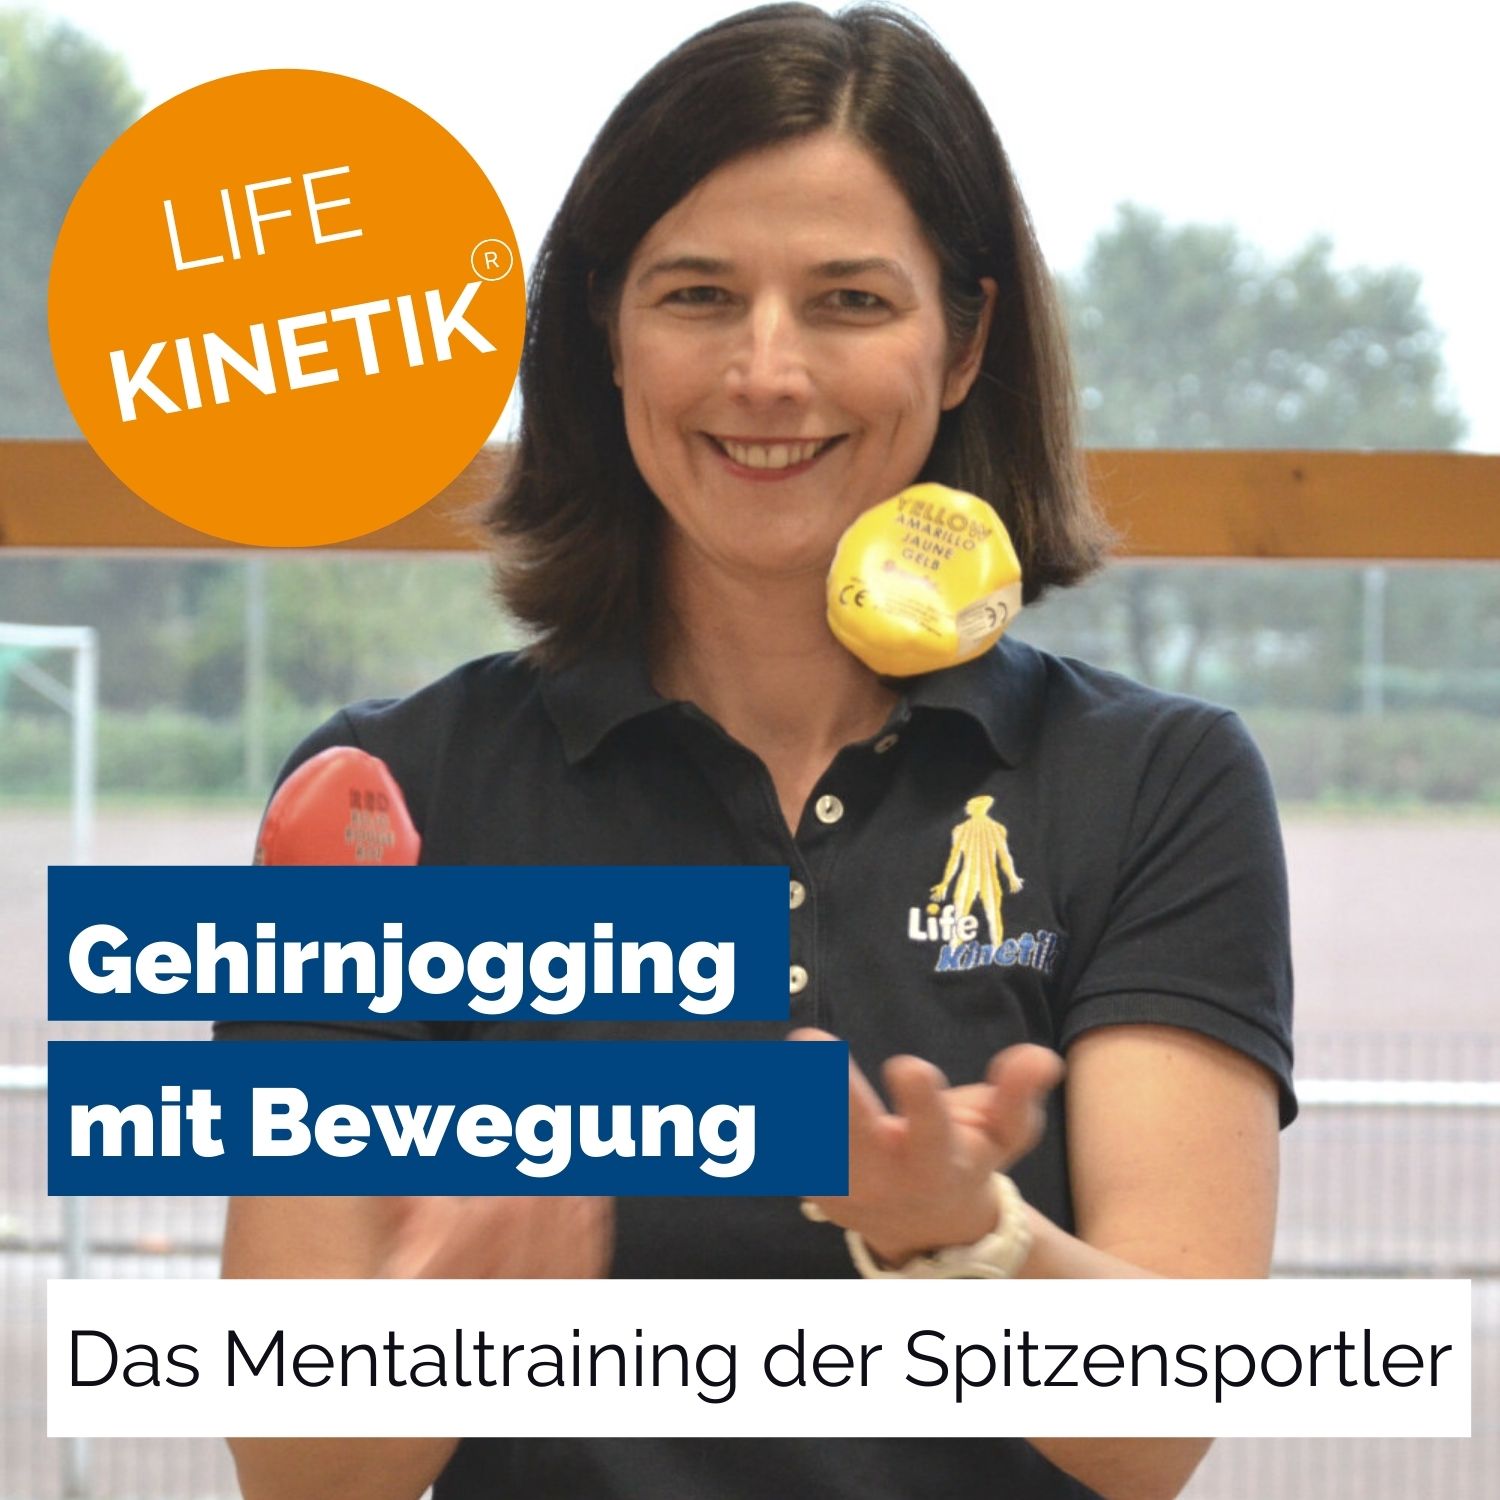 Life Kinetik: So lernt das Gehirn das Dribbeln! :: Trainer*in :: Training  und Service - Fussball.de